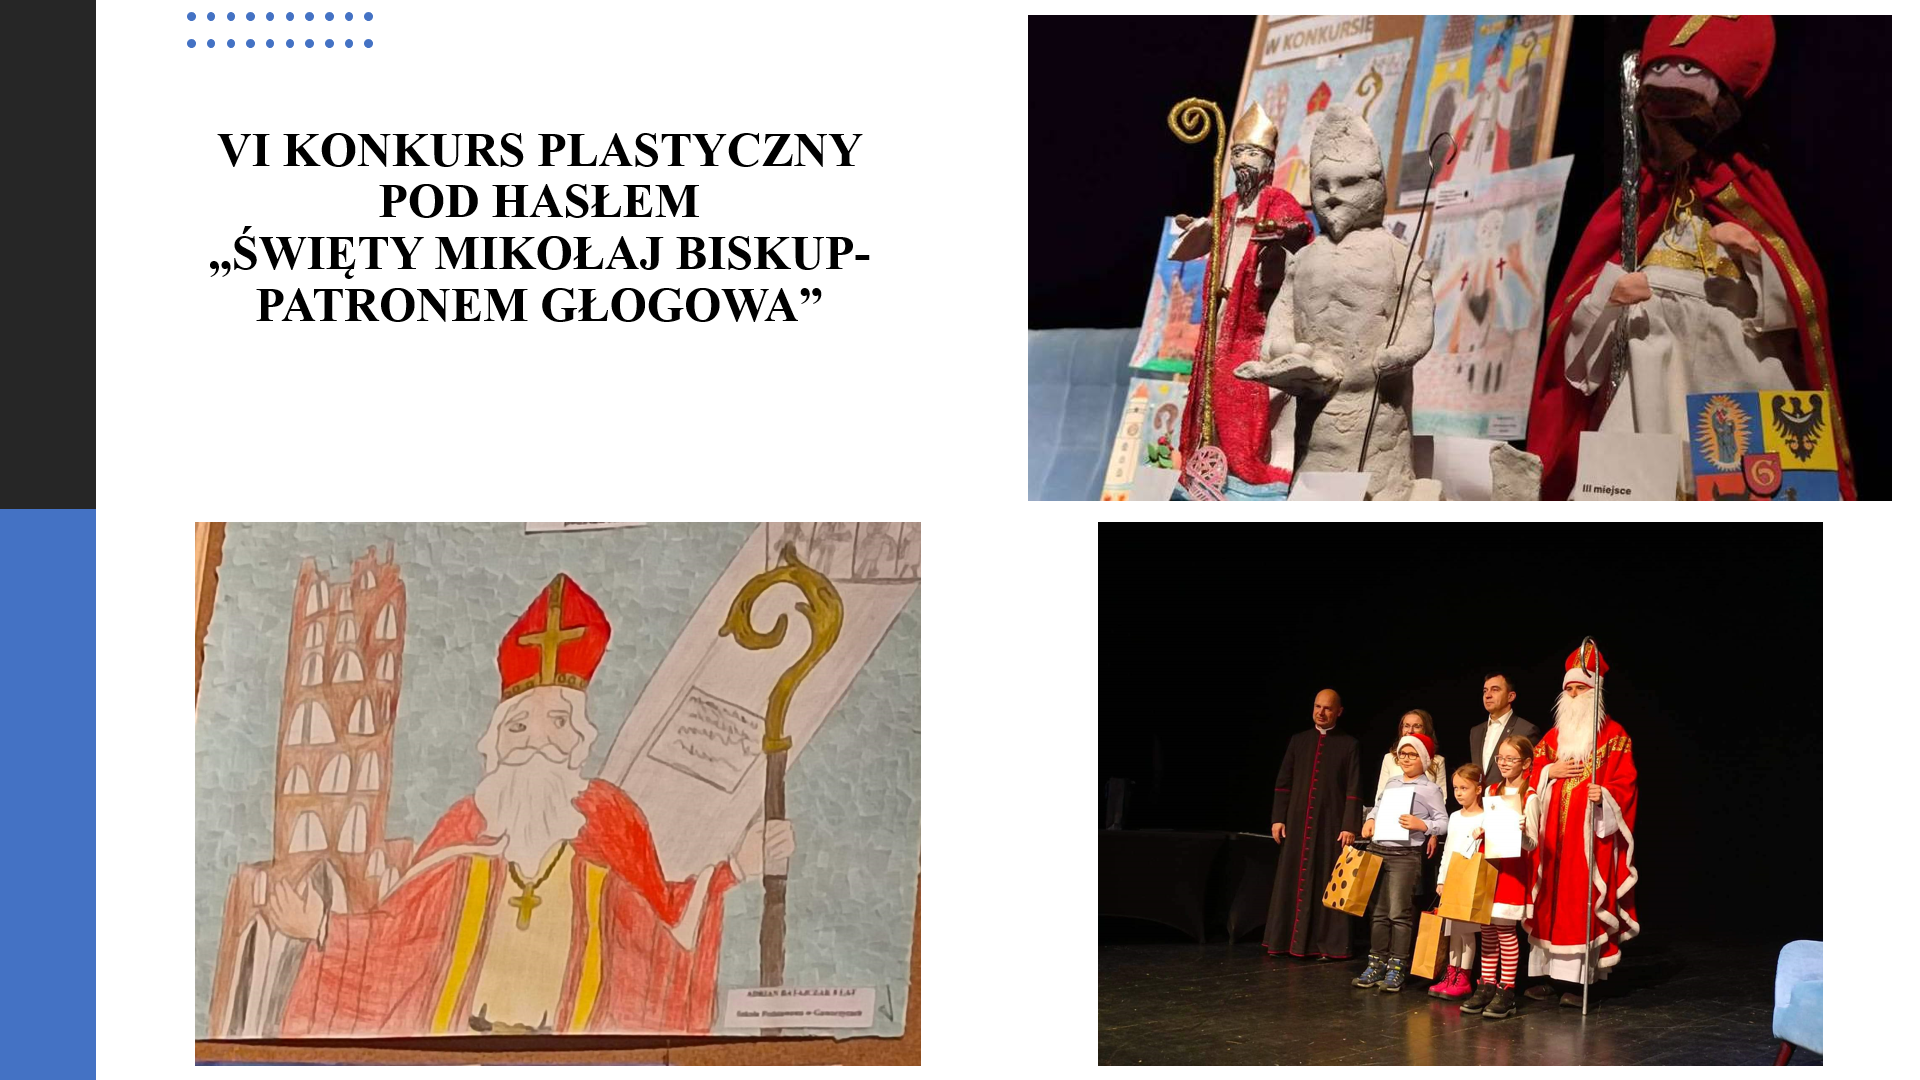 VI edycja Konkursu plastycznego ramach Dni ze Świętym Mikołajem pod hasłem “Święty Mikołaj biskup – patron Głogowa”.